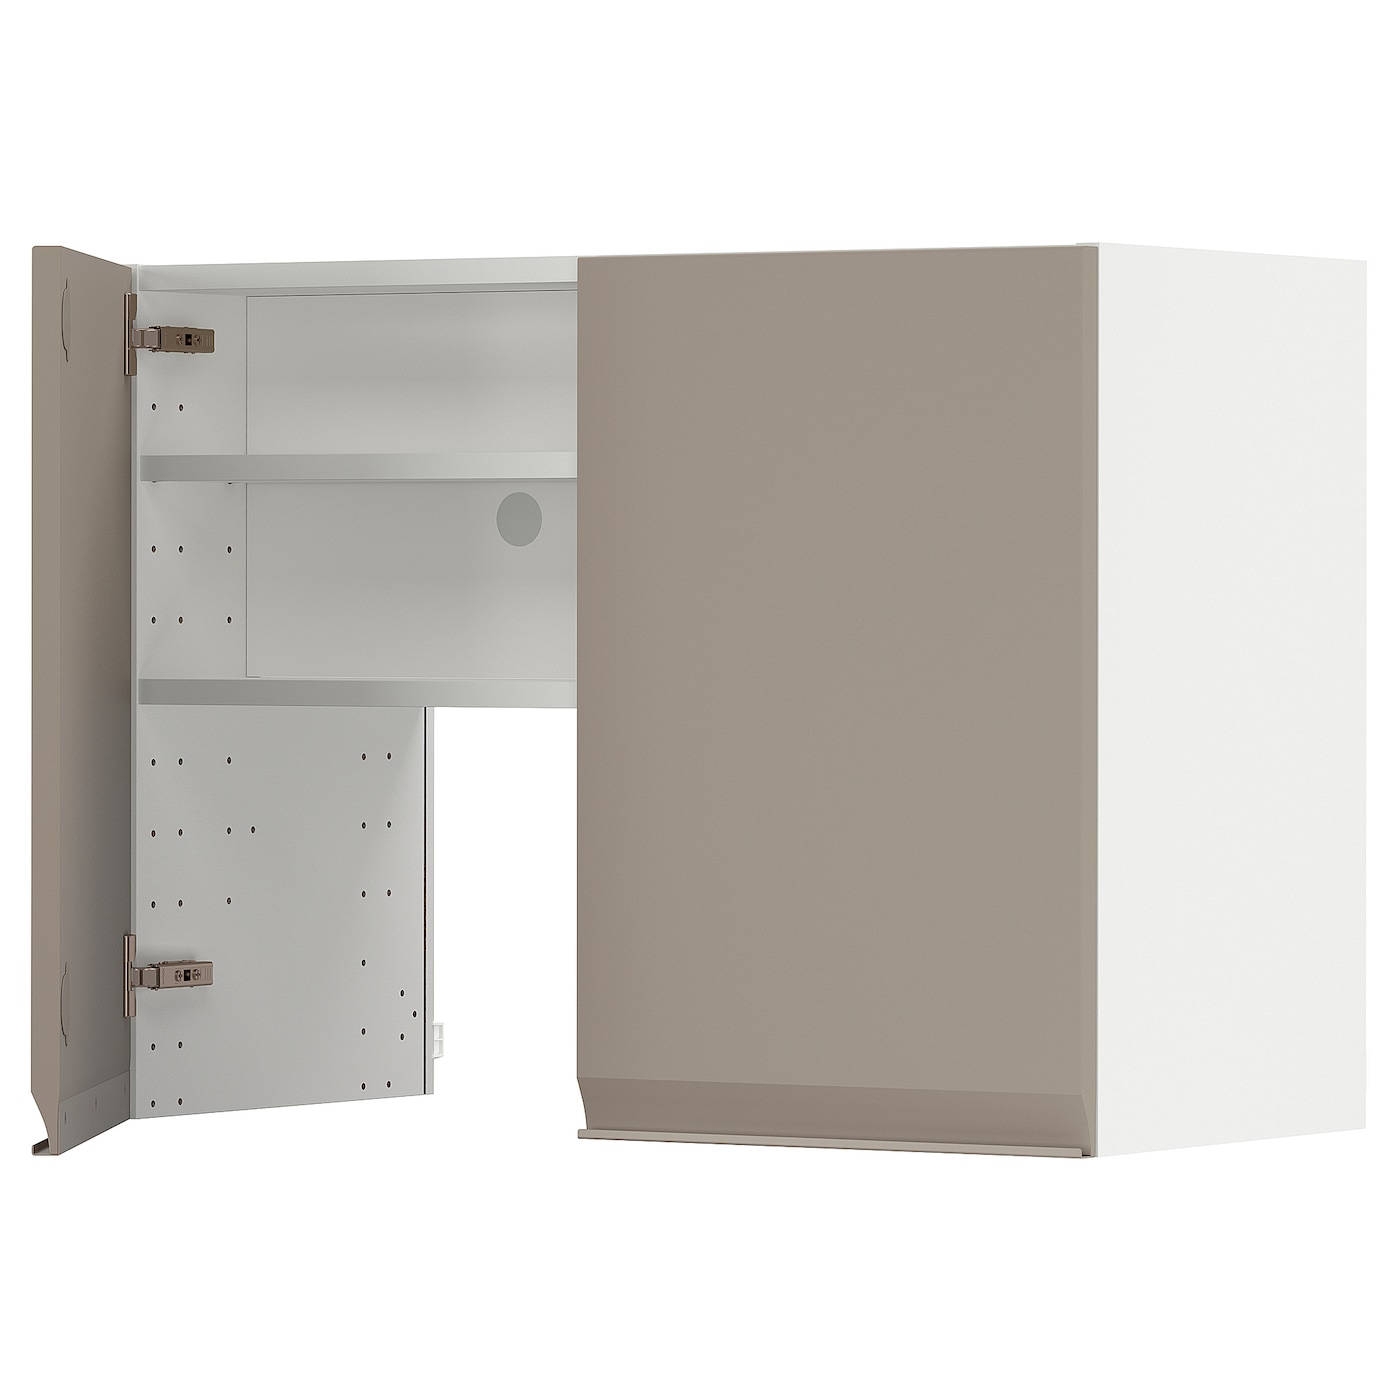 Навесной шкаф с полкой - METOD IKEA/ МЕТОД ИКЕА, 80х60 см, белый/светло-коричневый